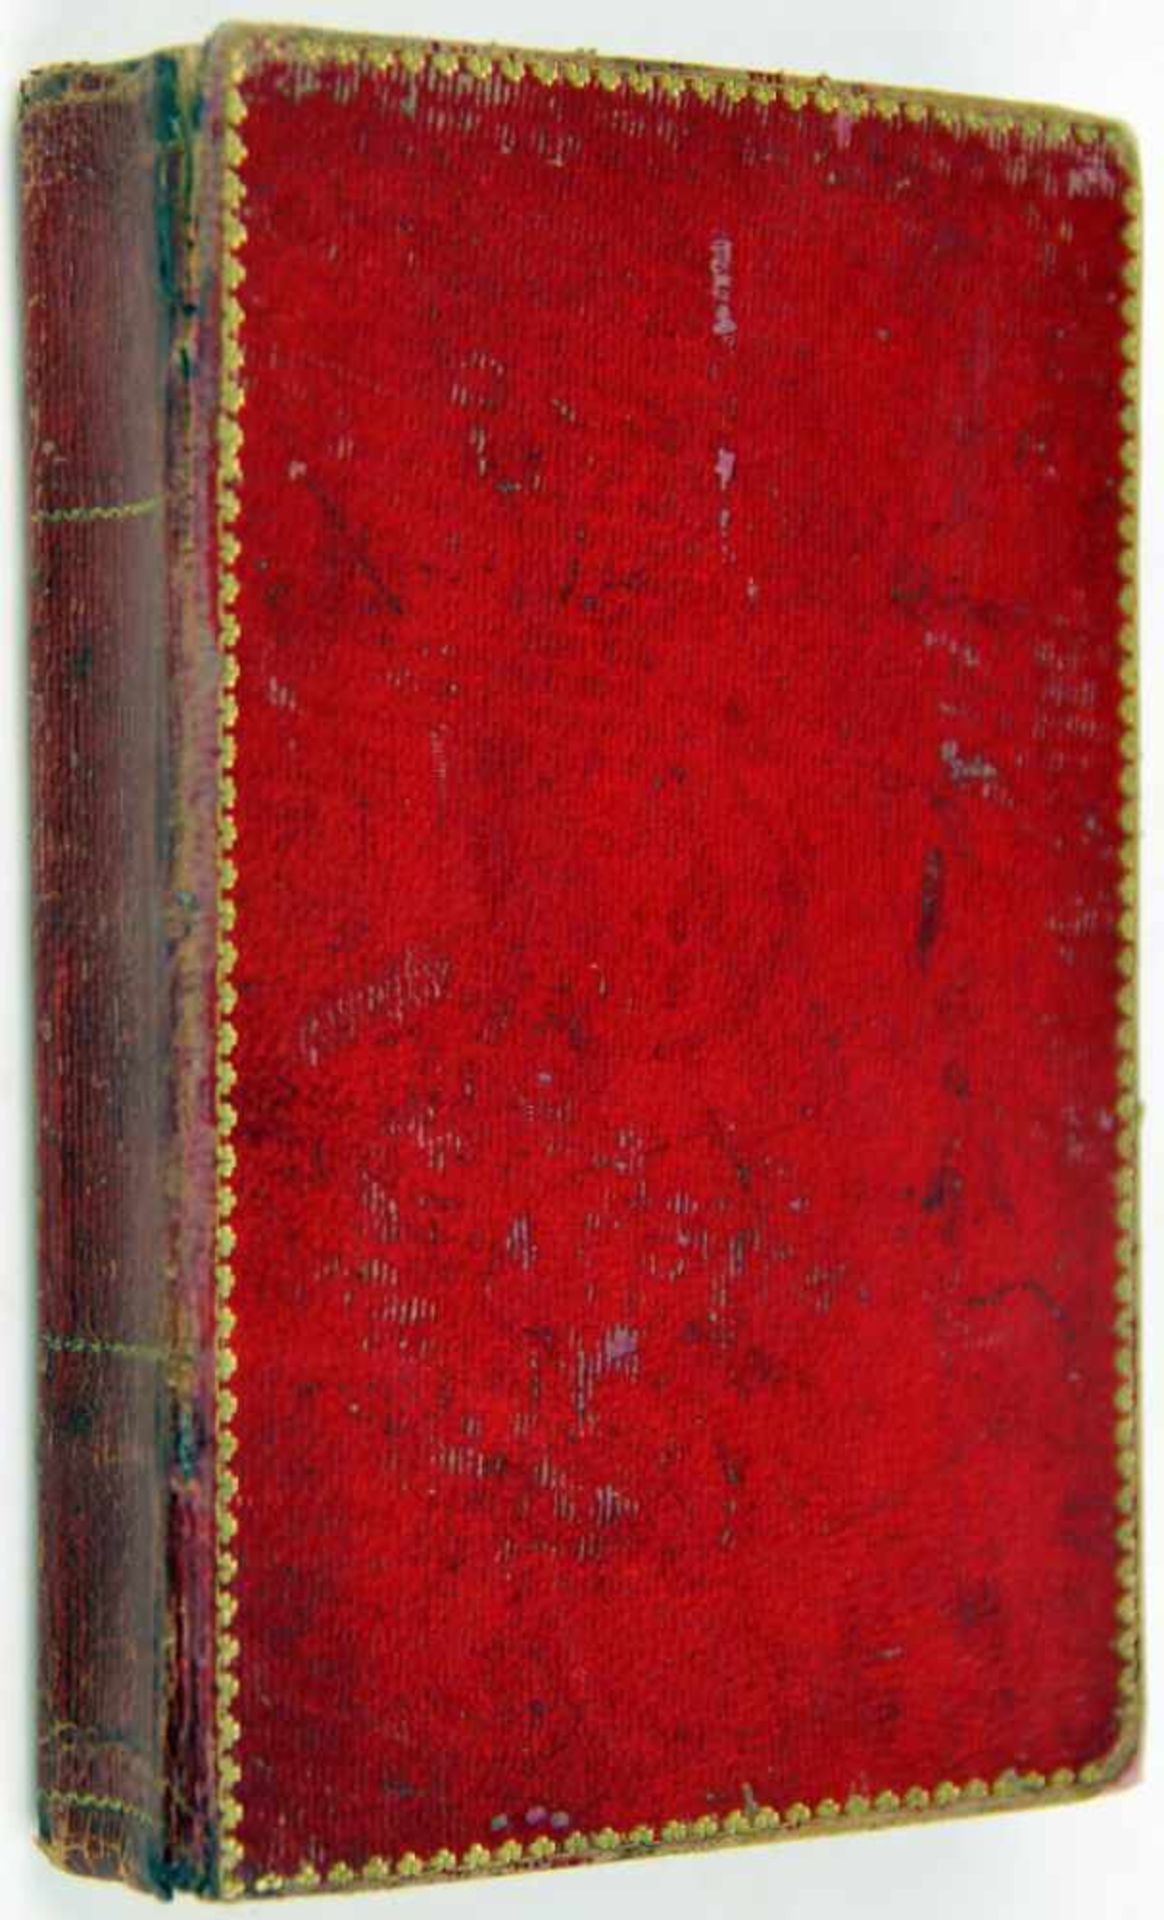 Almanache. -Minerva. Taschenbuch für das Jahr 1815. Jahrgang 7. Leipzig, Gerhard Fleischer (1814).